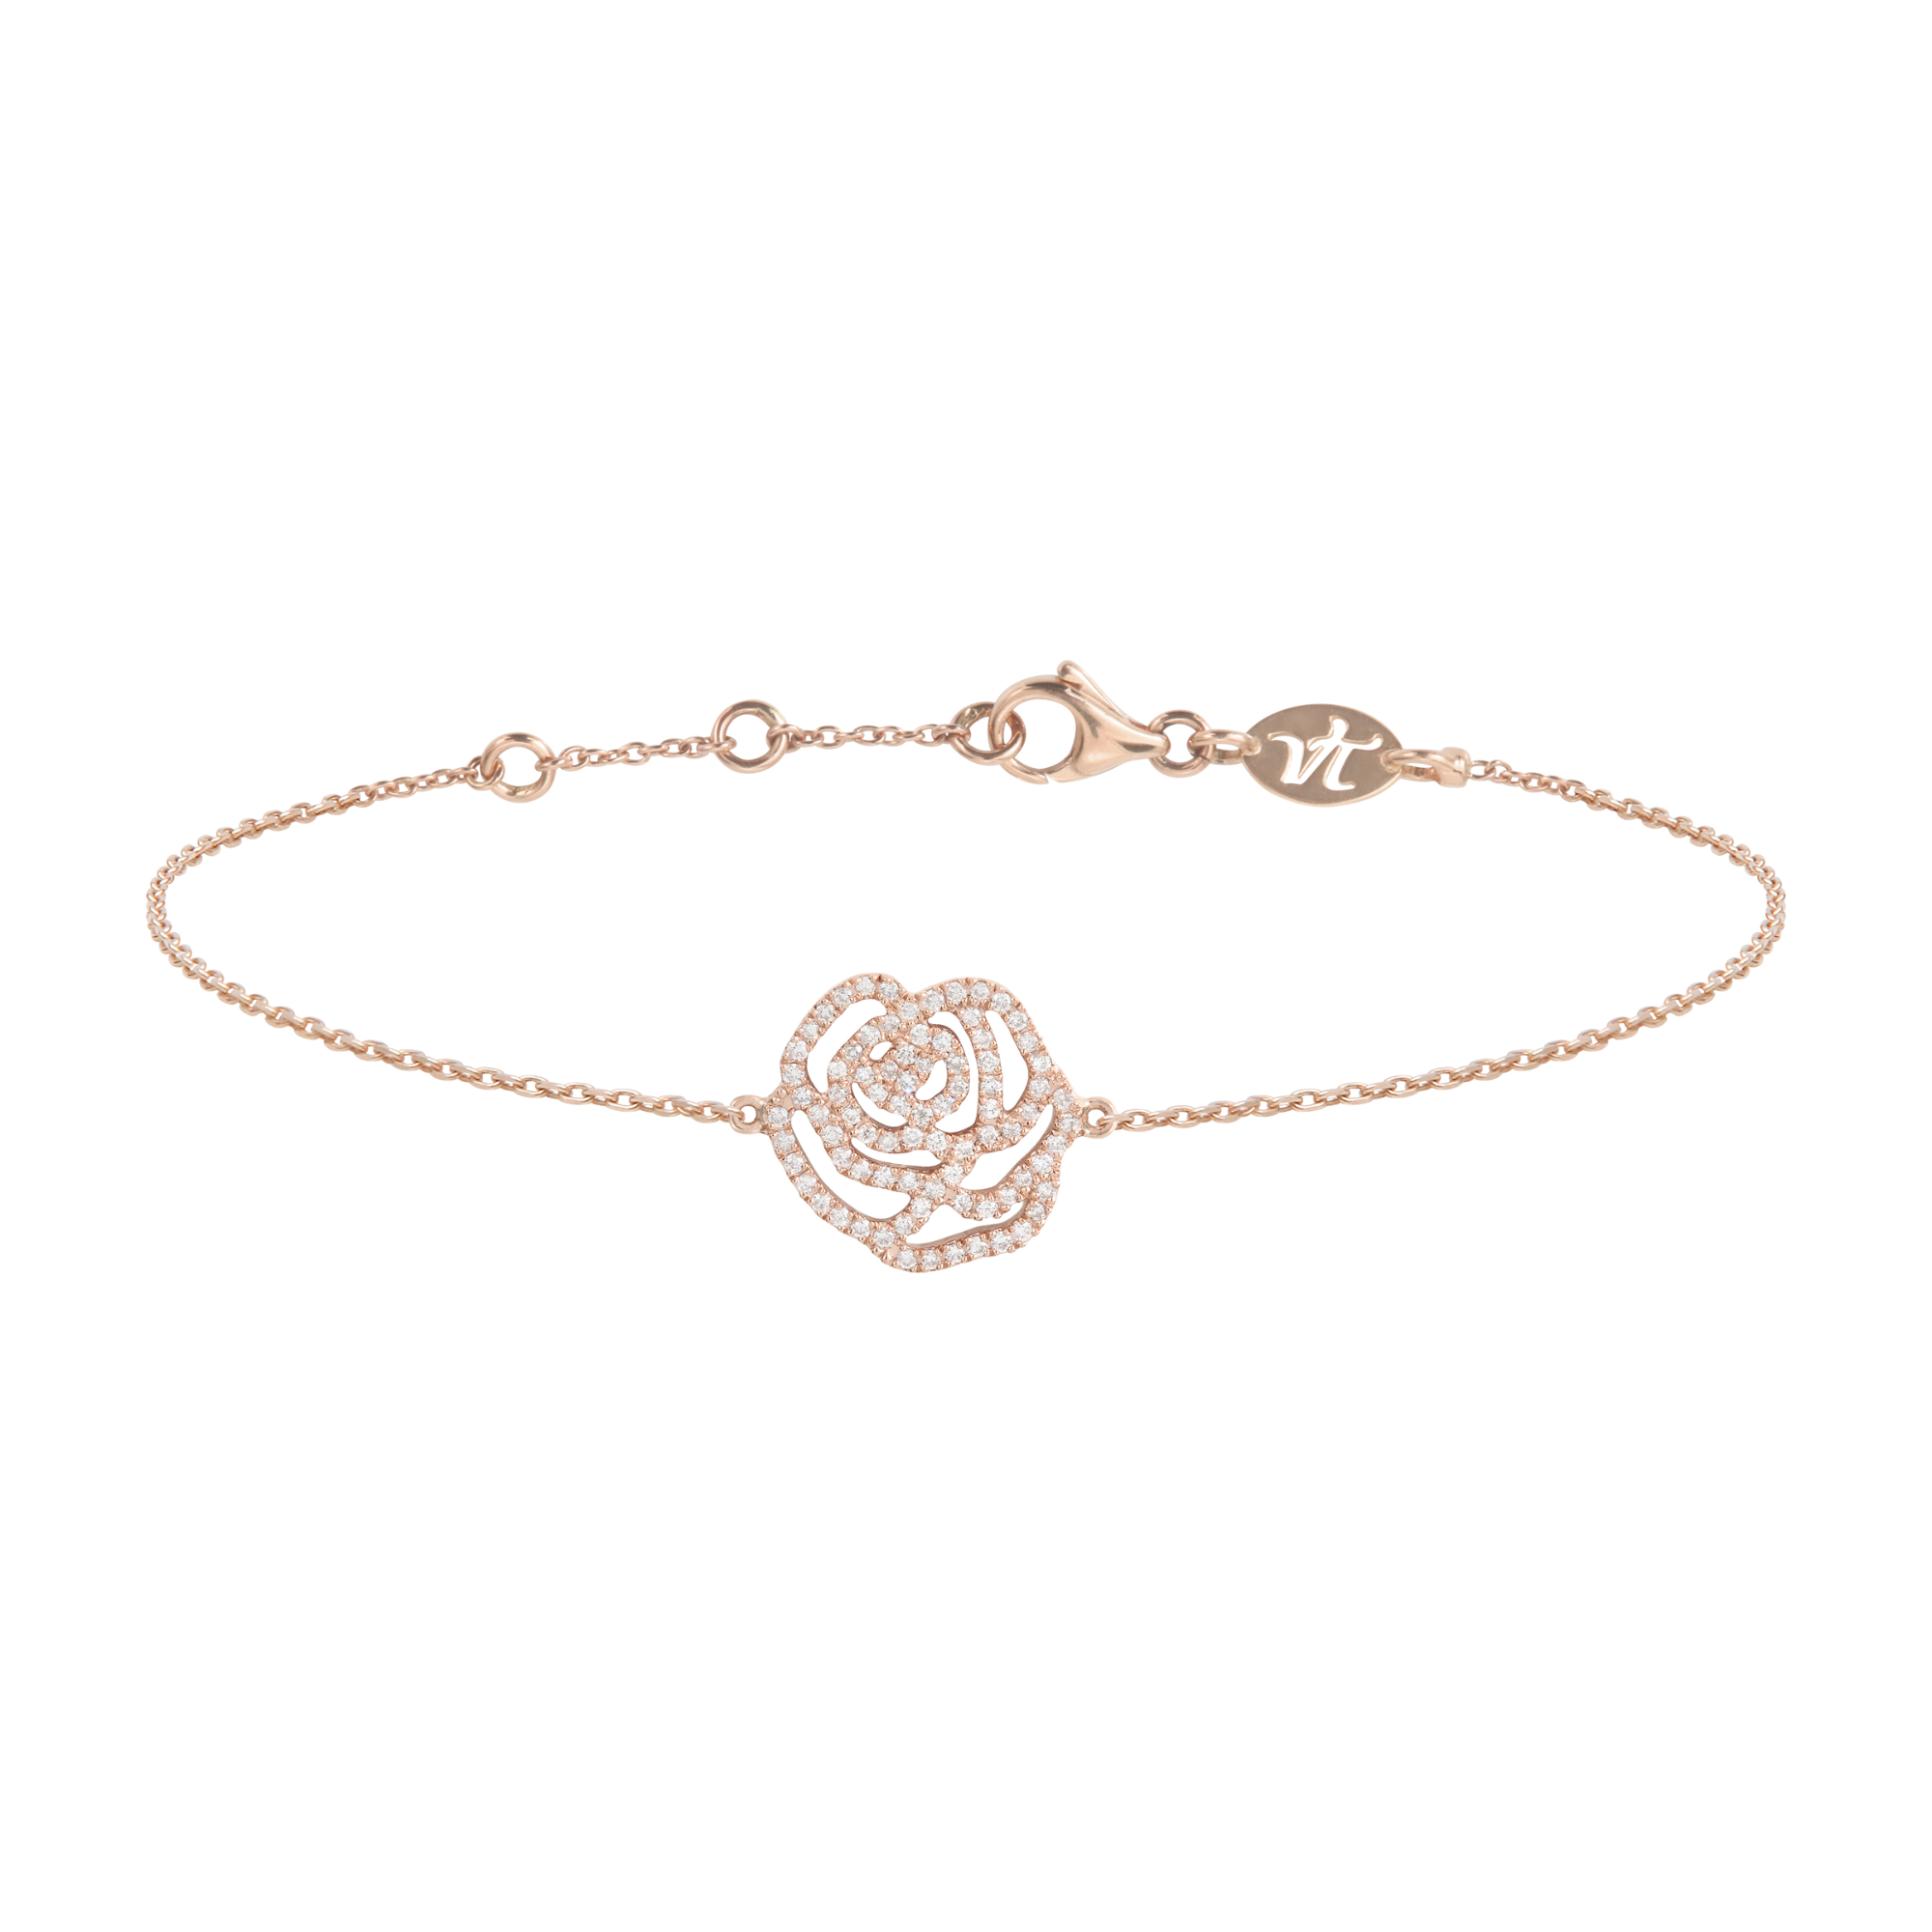 Bracelet d'exception fleur la rose en or rose et diamants pour femme. Fabriqué en France, ce bijou élégant et raffiné de joaillerie fine est très prisé des célébrités et est un cadeau de Noël, d'anniversaire ou de naissance idéal.